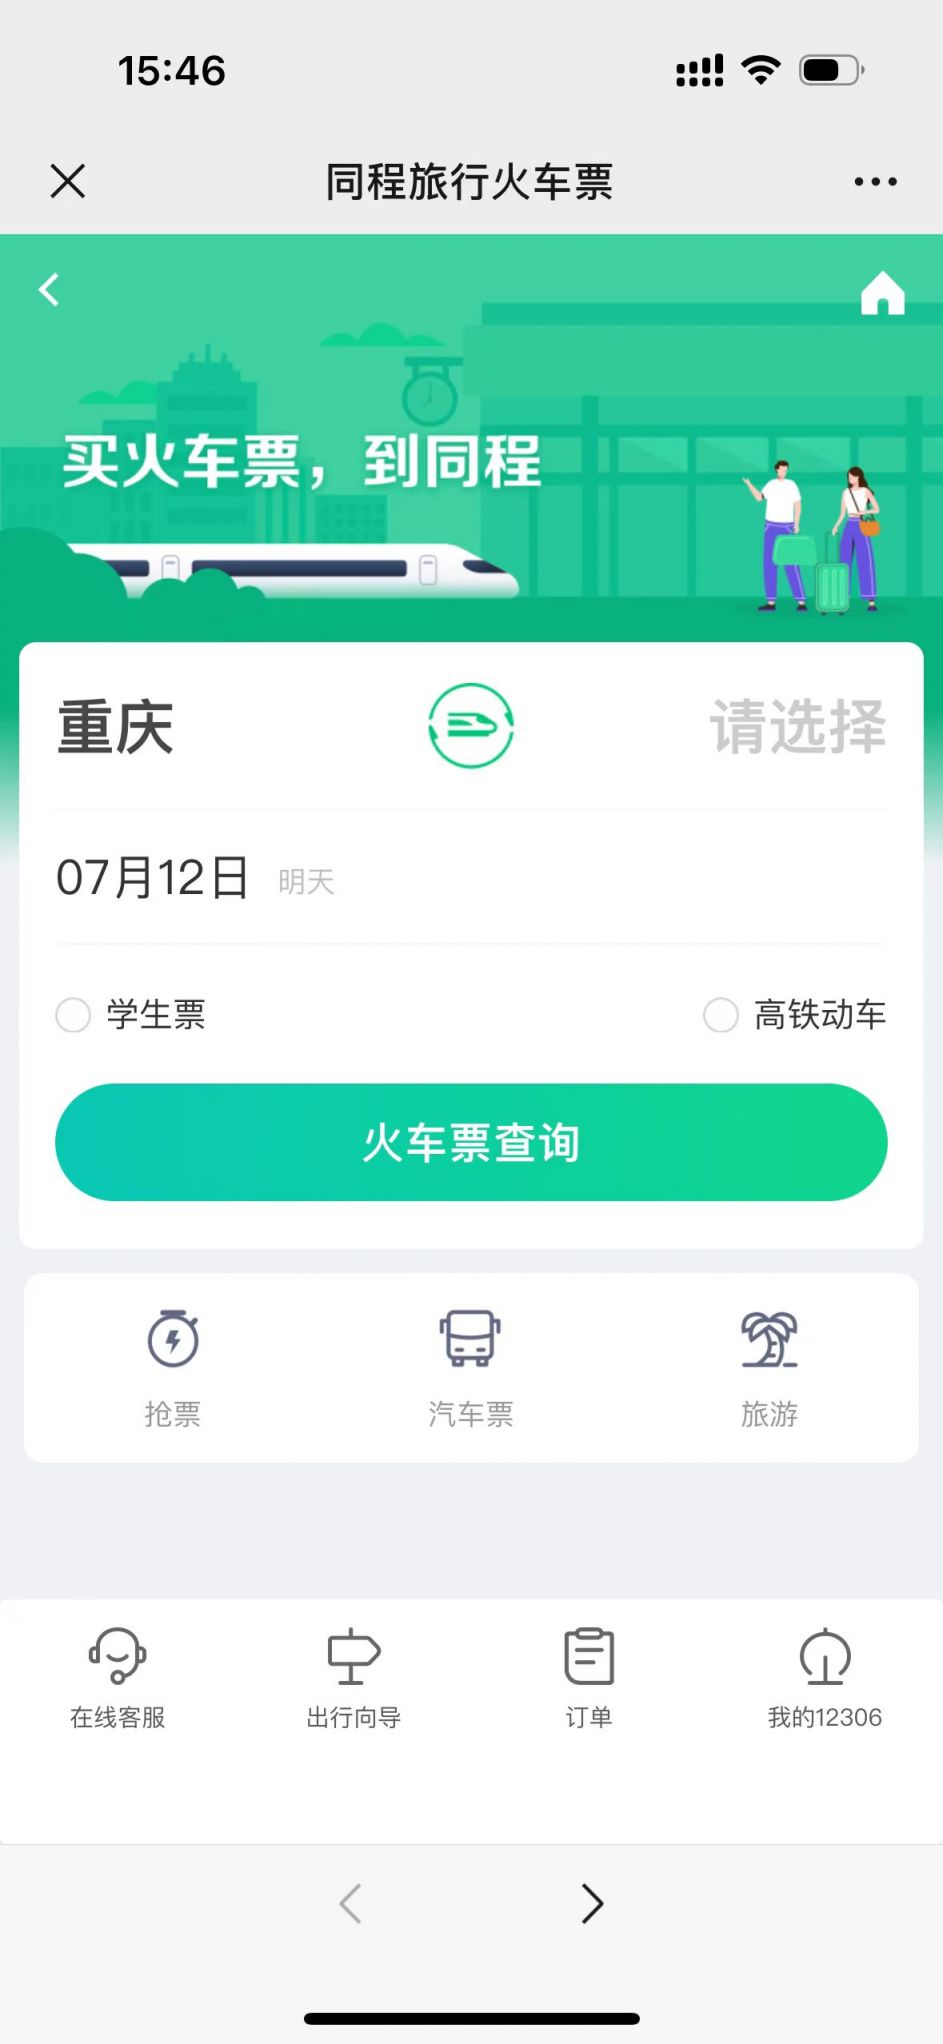 重庆火车高铁购票操作指引